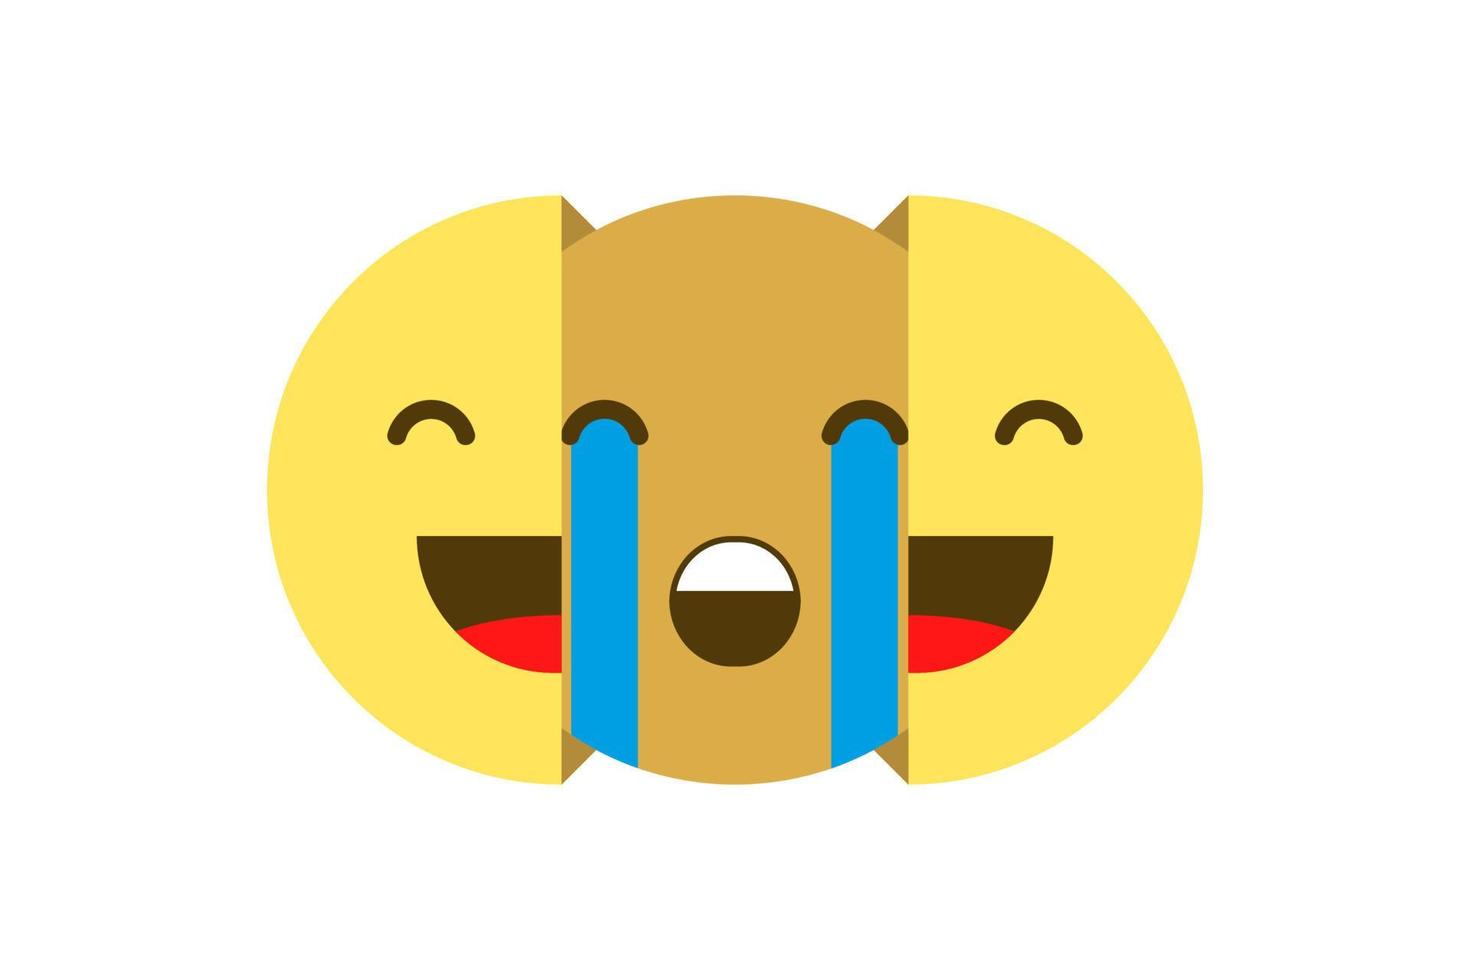 Sad emoticon hiding under a happy mask. Vector illustration